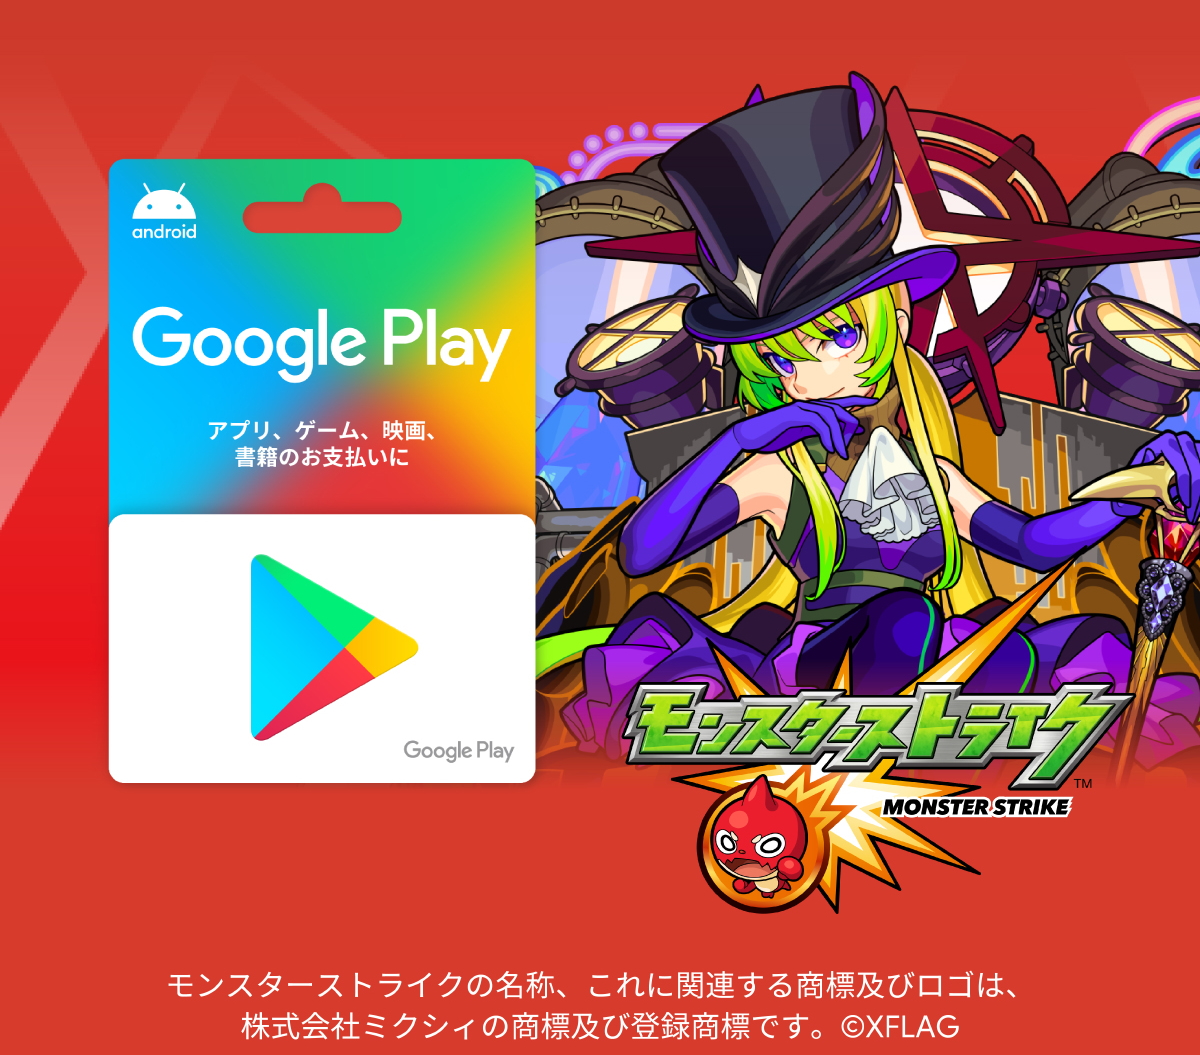 モンスト にてgoogle Playカード1 500円券以上を購入 登録でアイテムget キャンペーン開催中 Game Watch